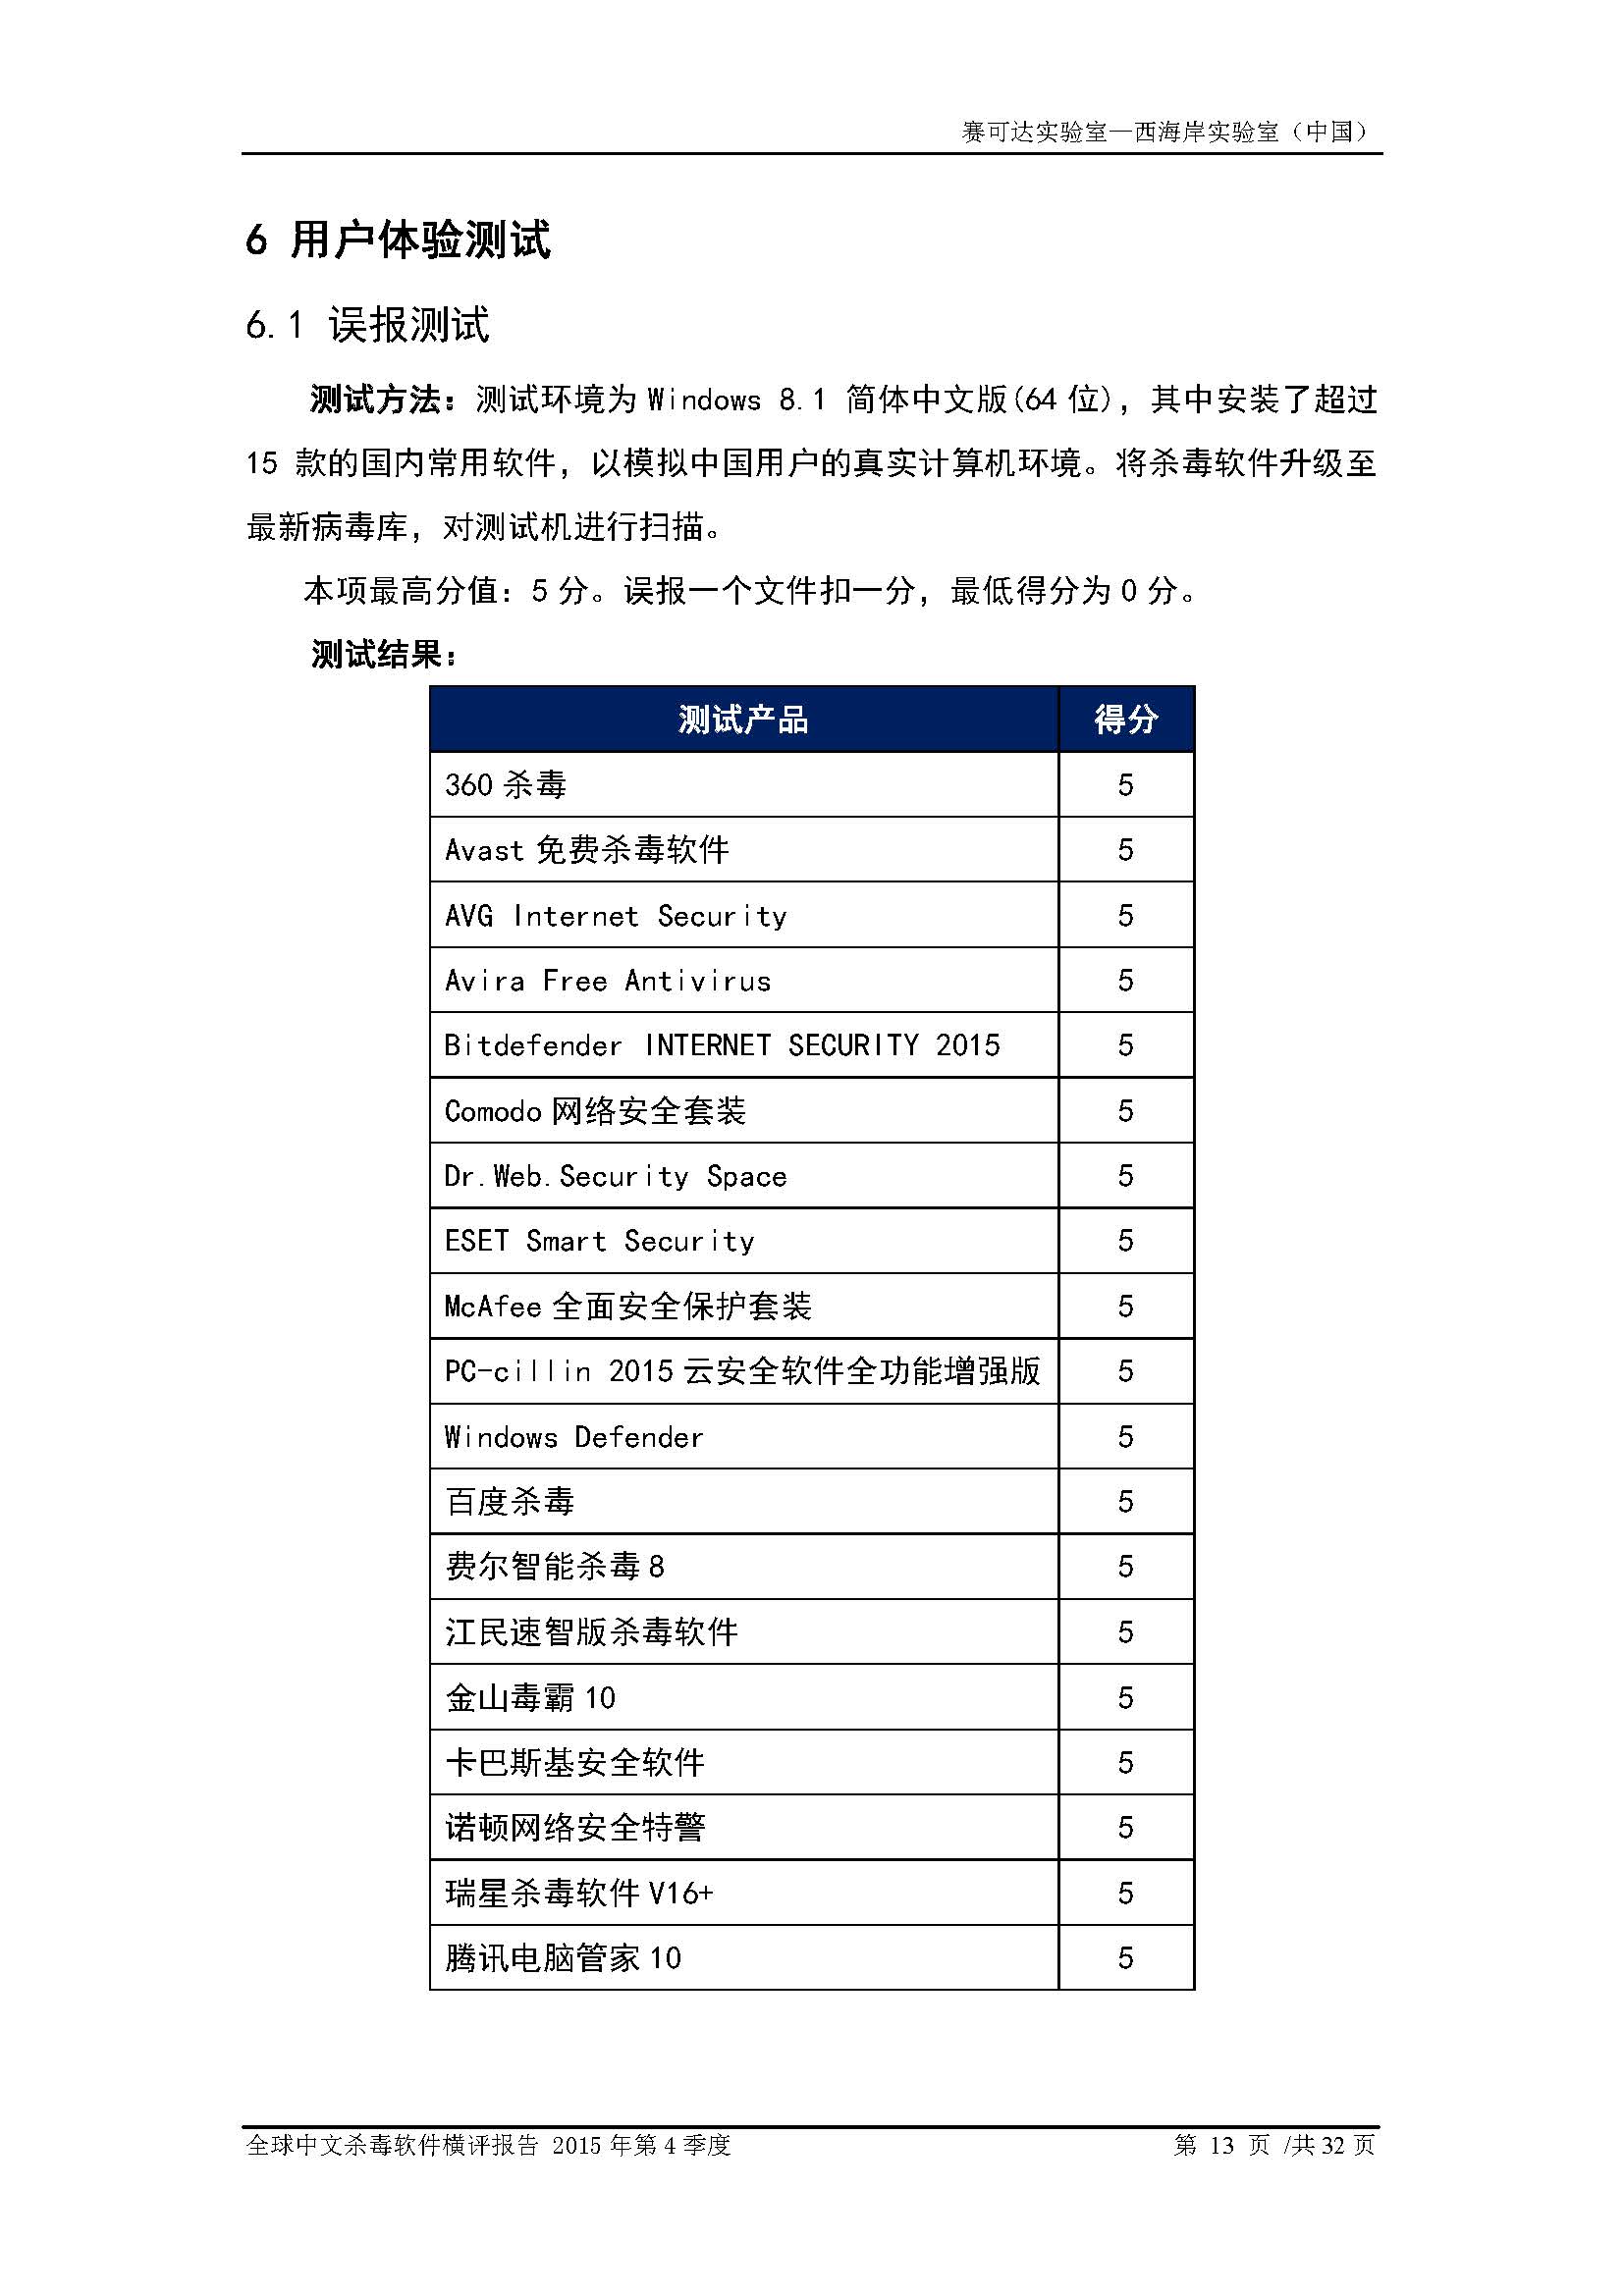 中文PC杀毒软件横评测试报告- Windows 8.1【中文版】.pdf (_Page_15.jpg